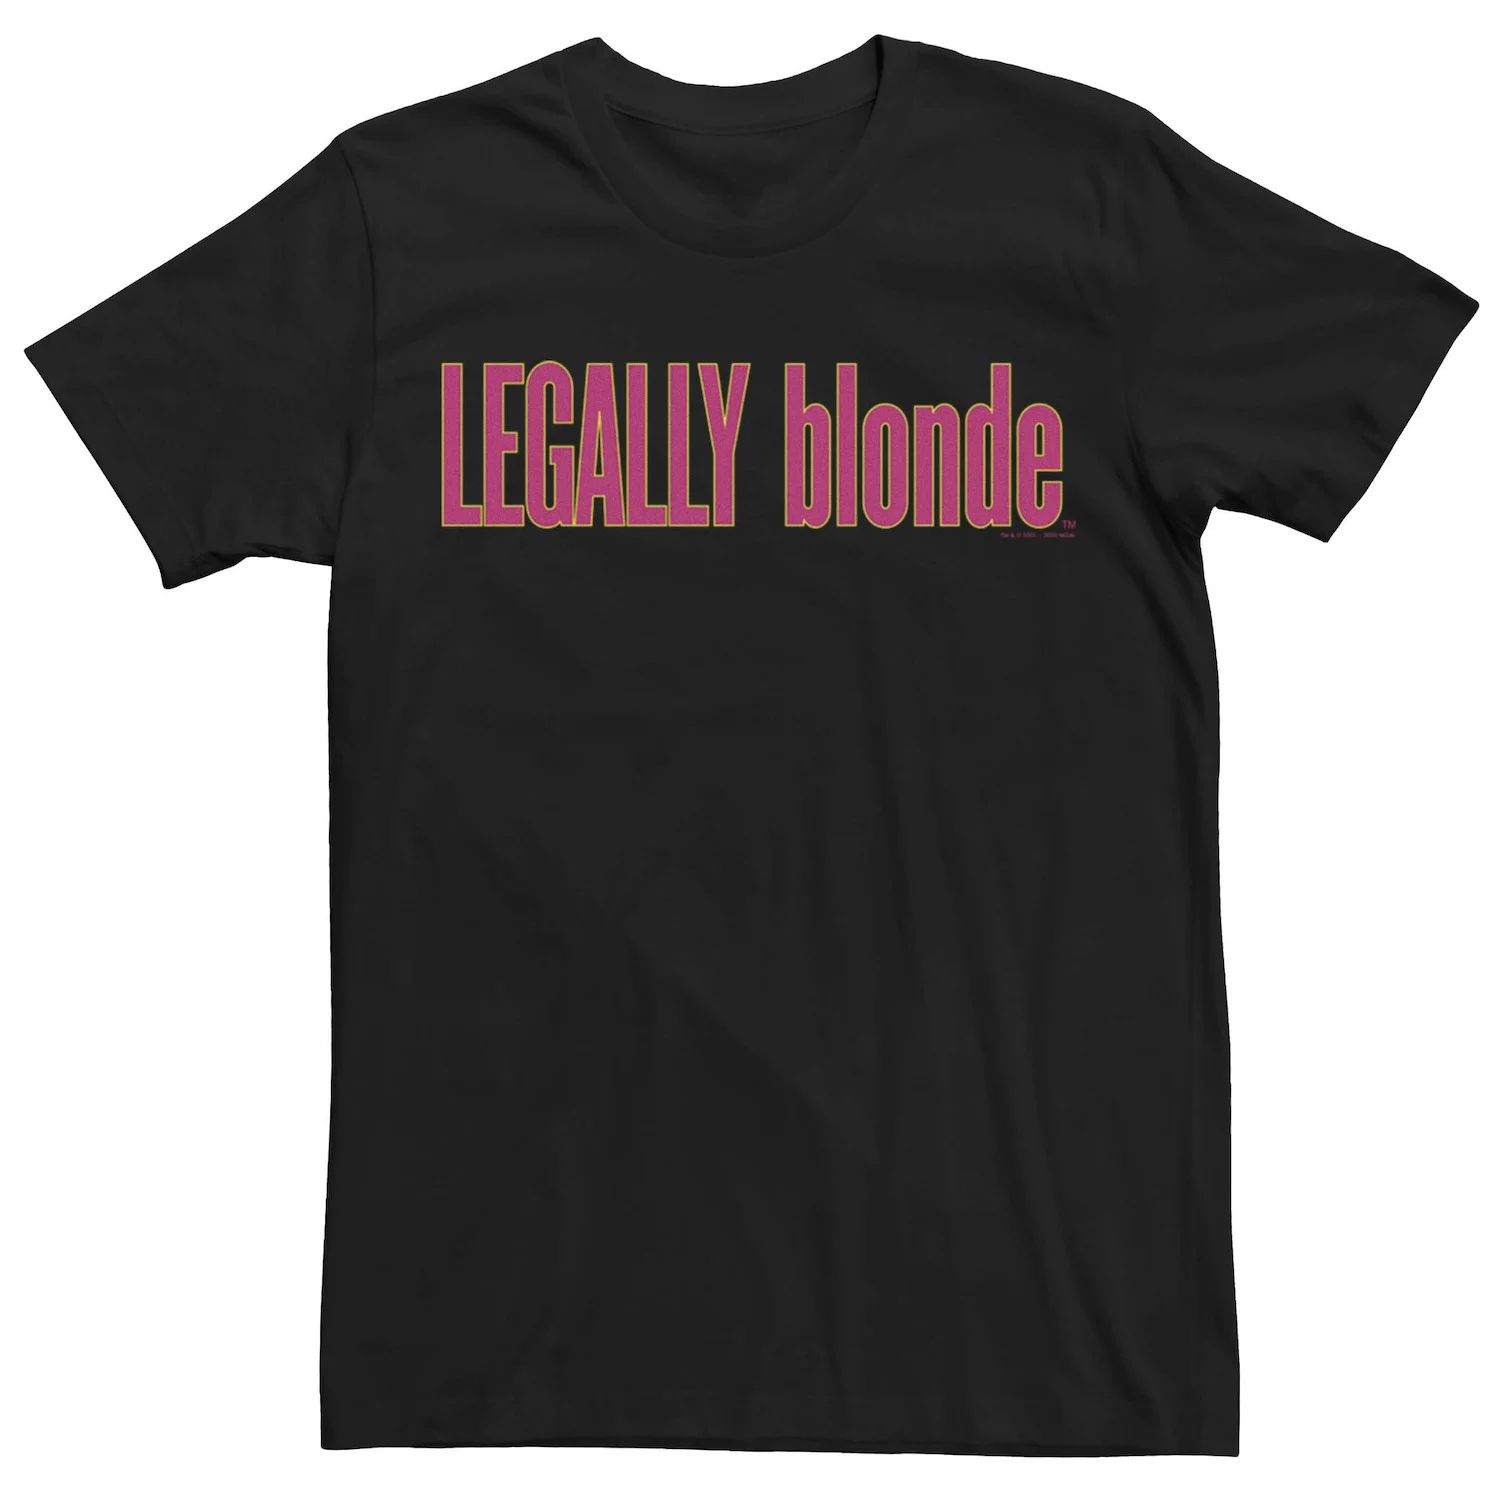 Мужская футболка с логотипом Legally Blonde Licensed Character brown amanda legally blonde